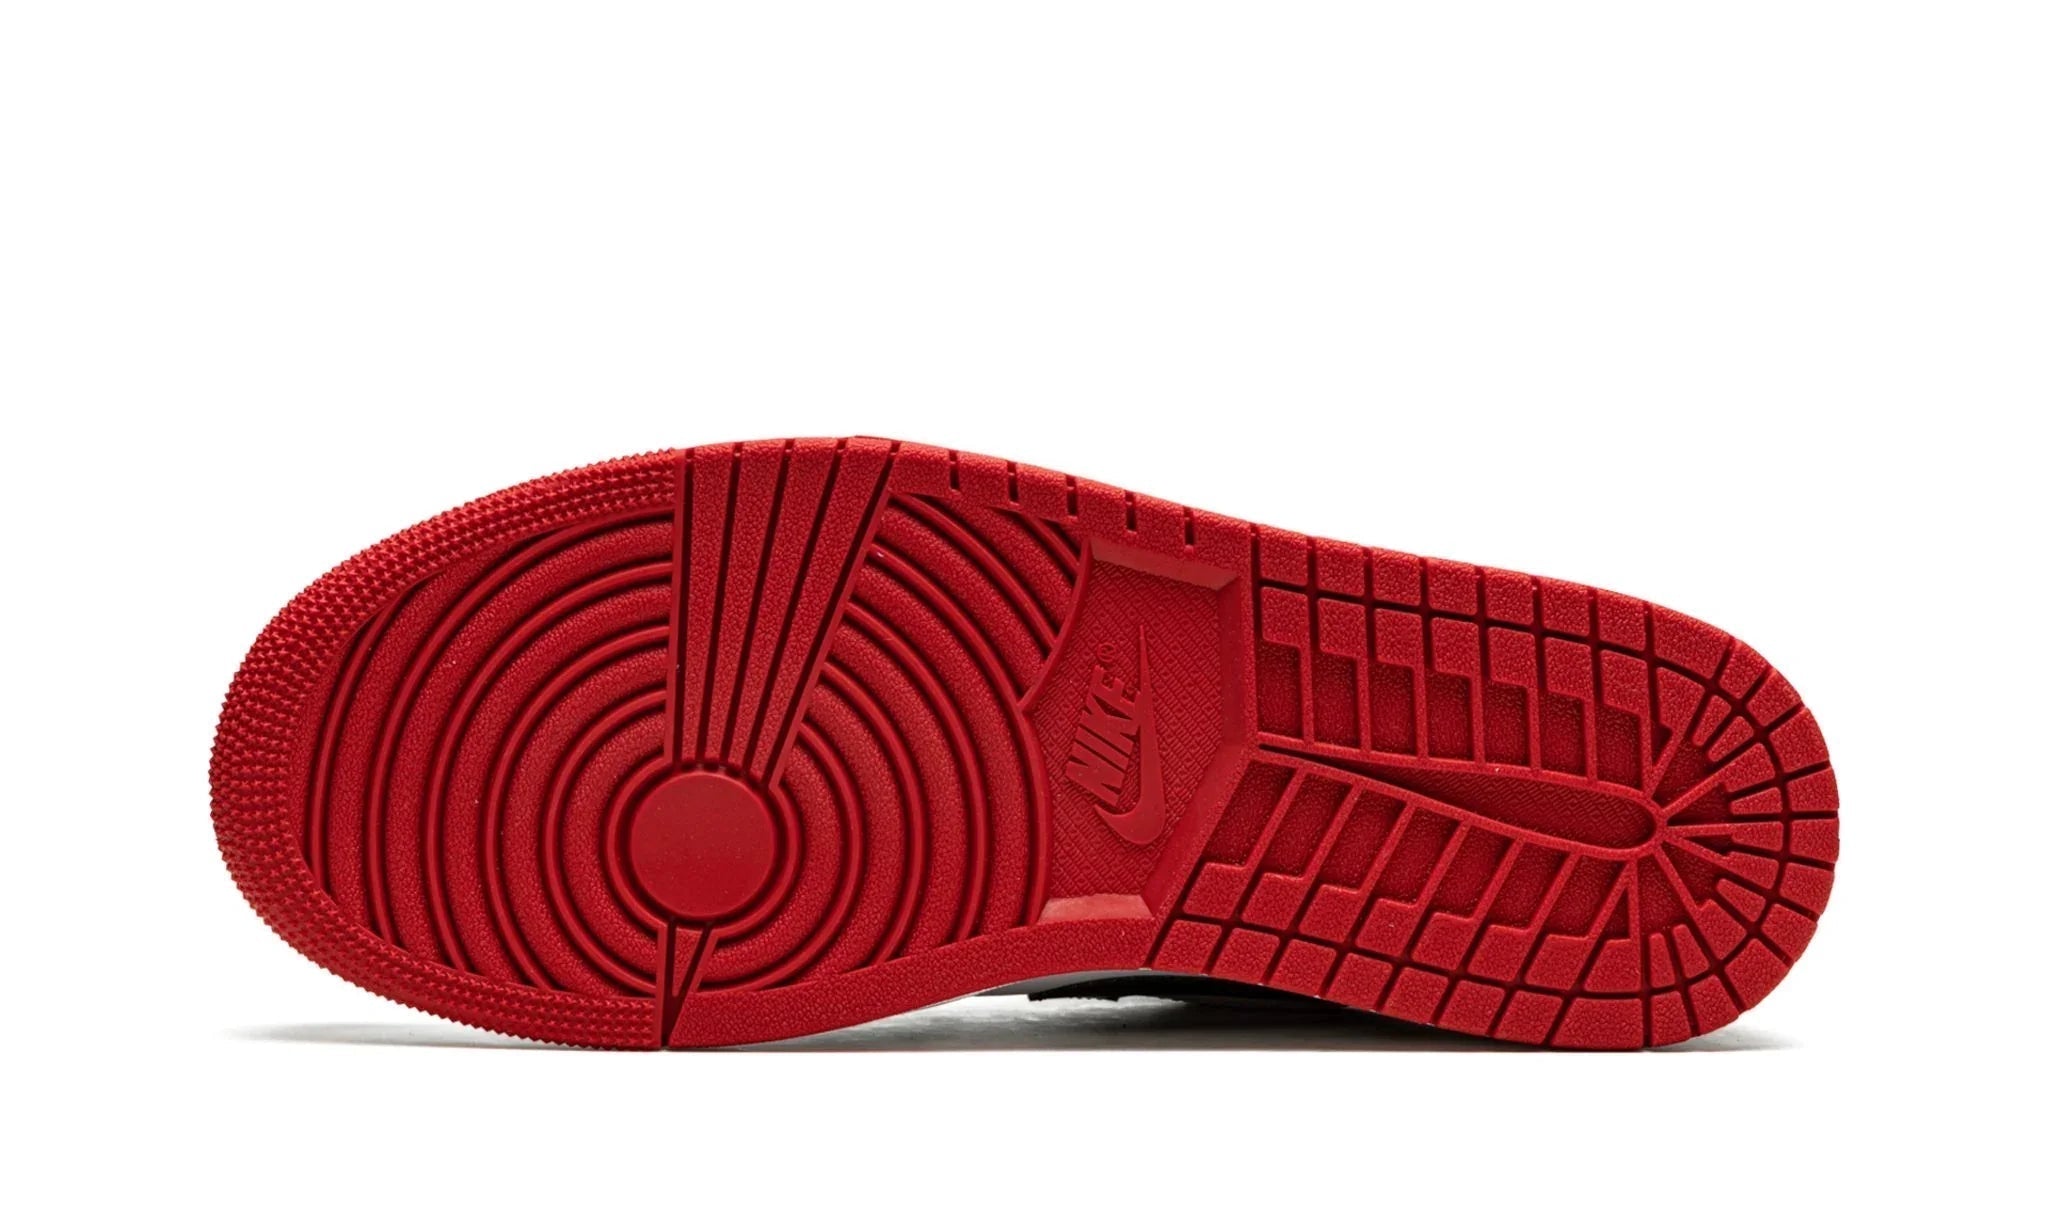 Air Jordan 1 Low "Bred Toe" - 553560-612 - Sneakers